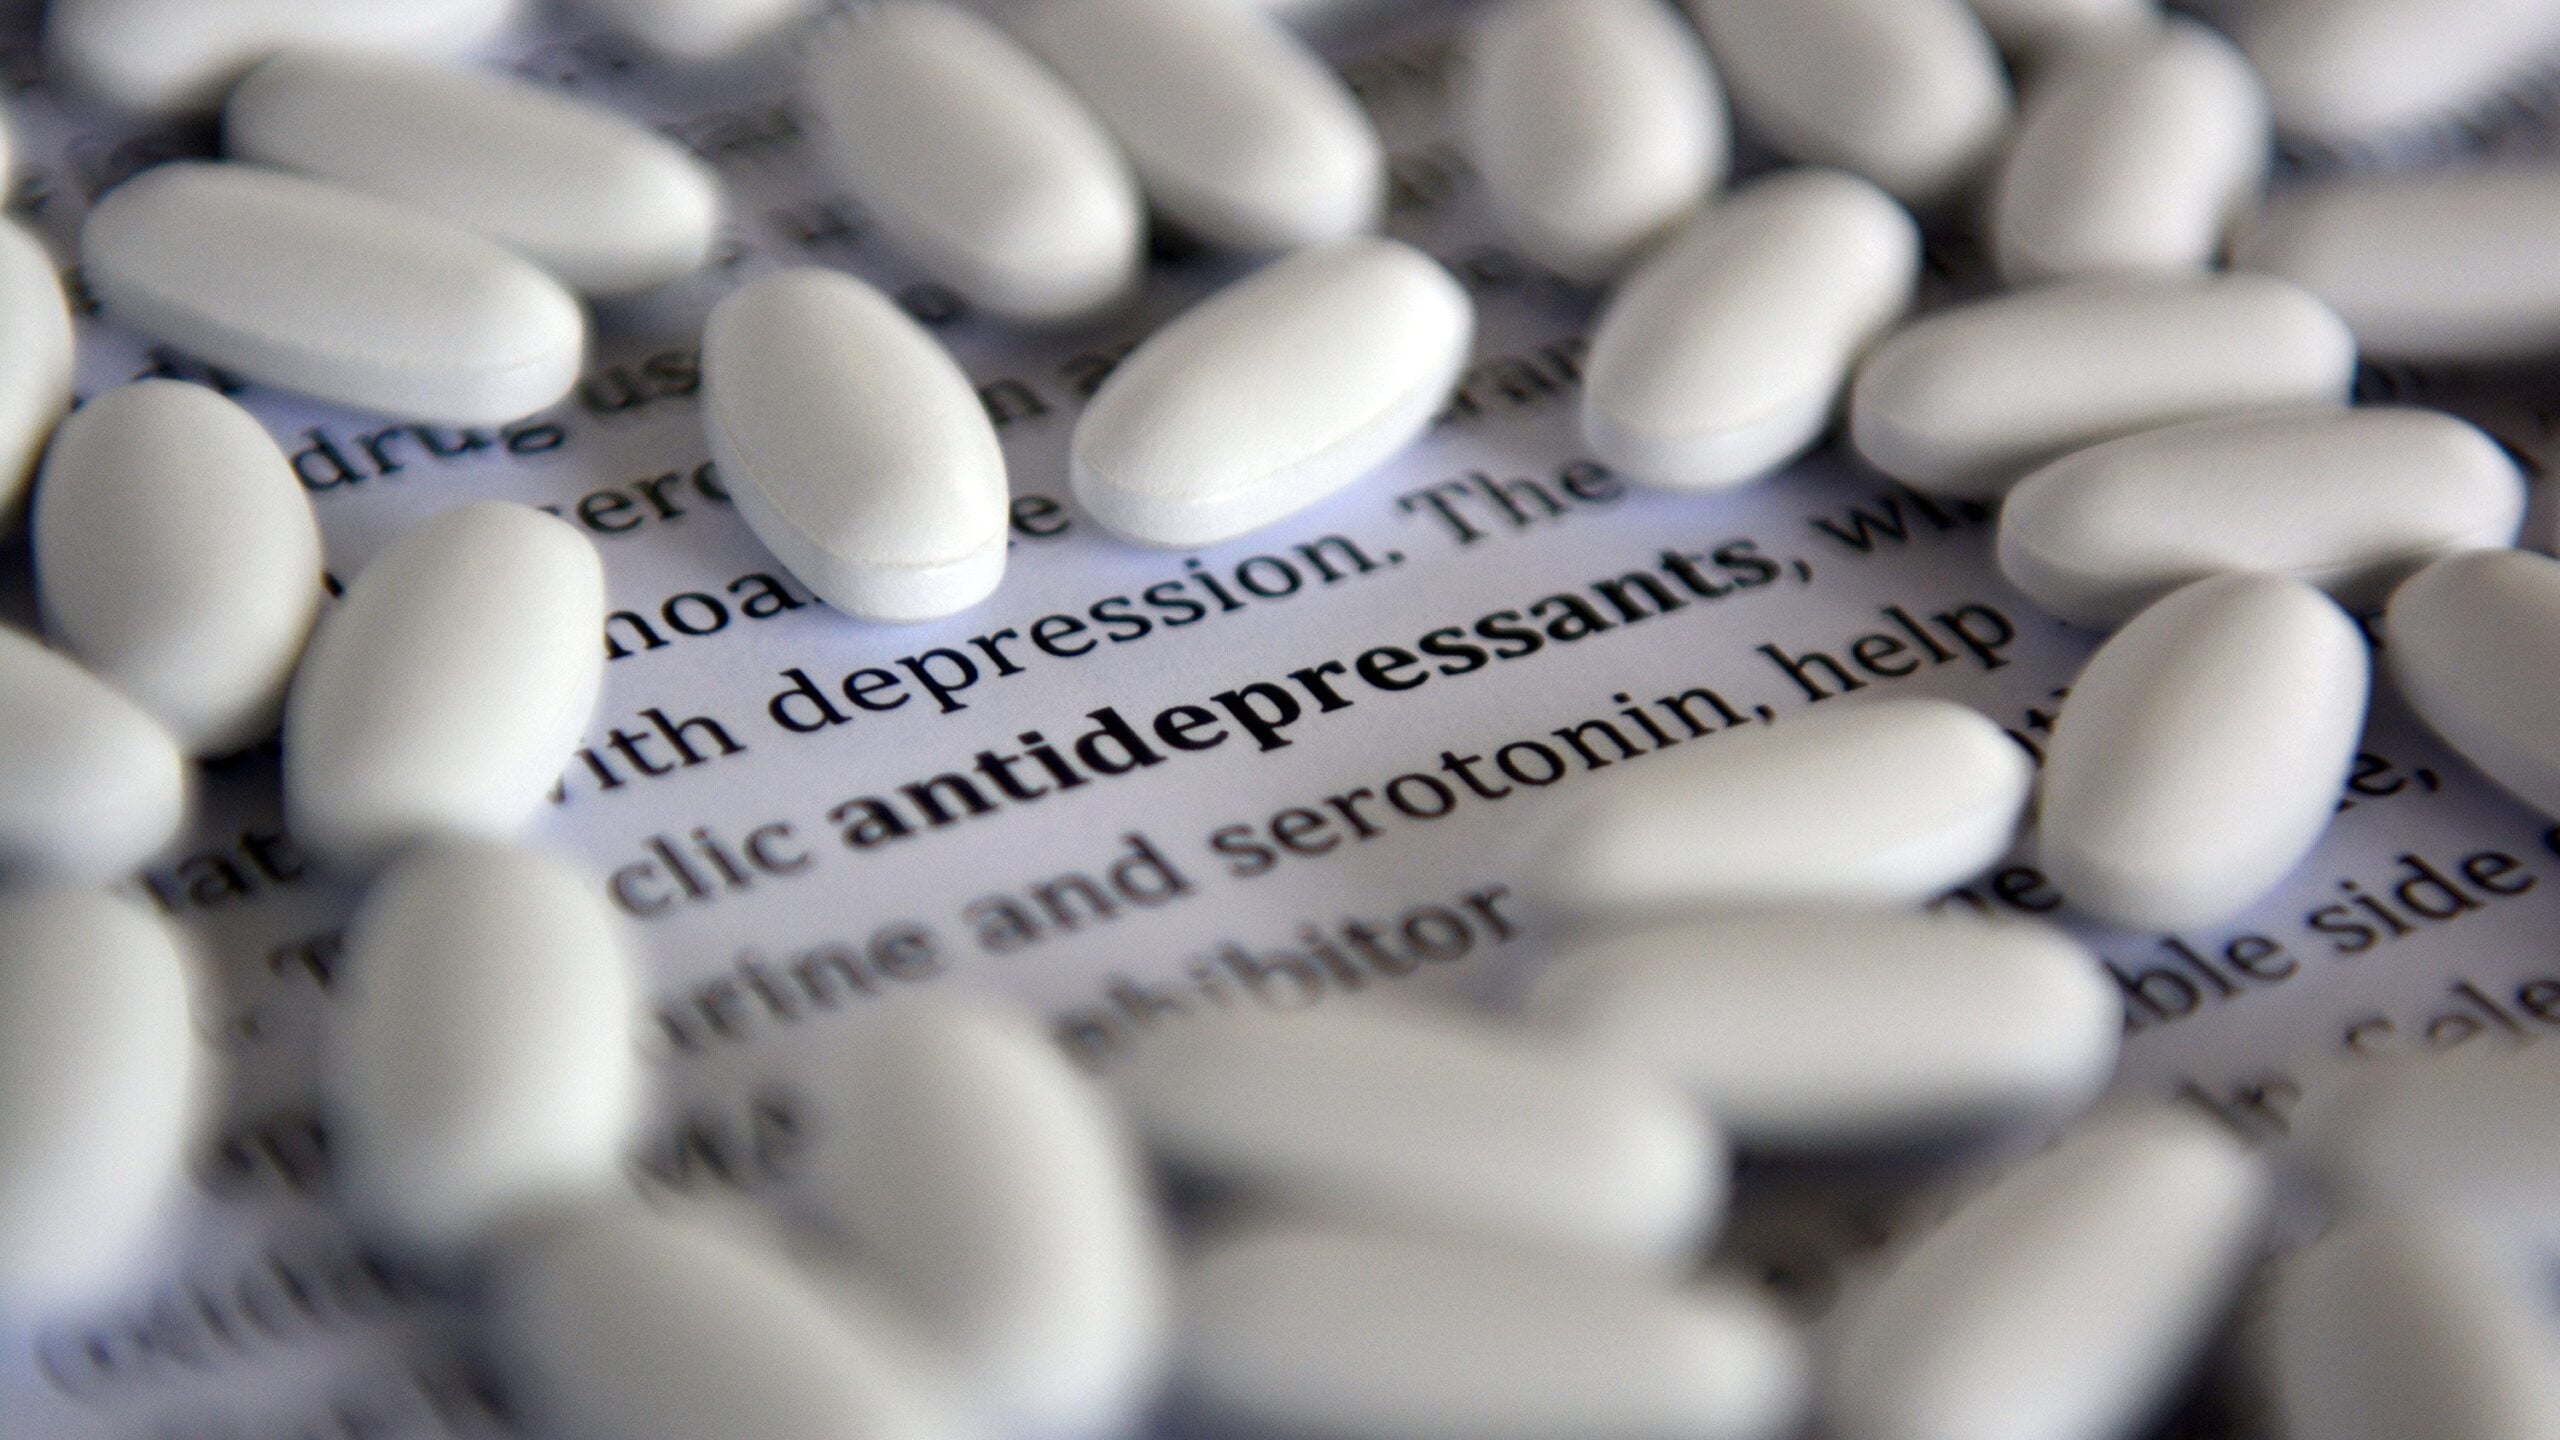 Understanding Antidepressants